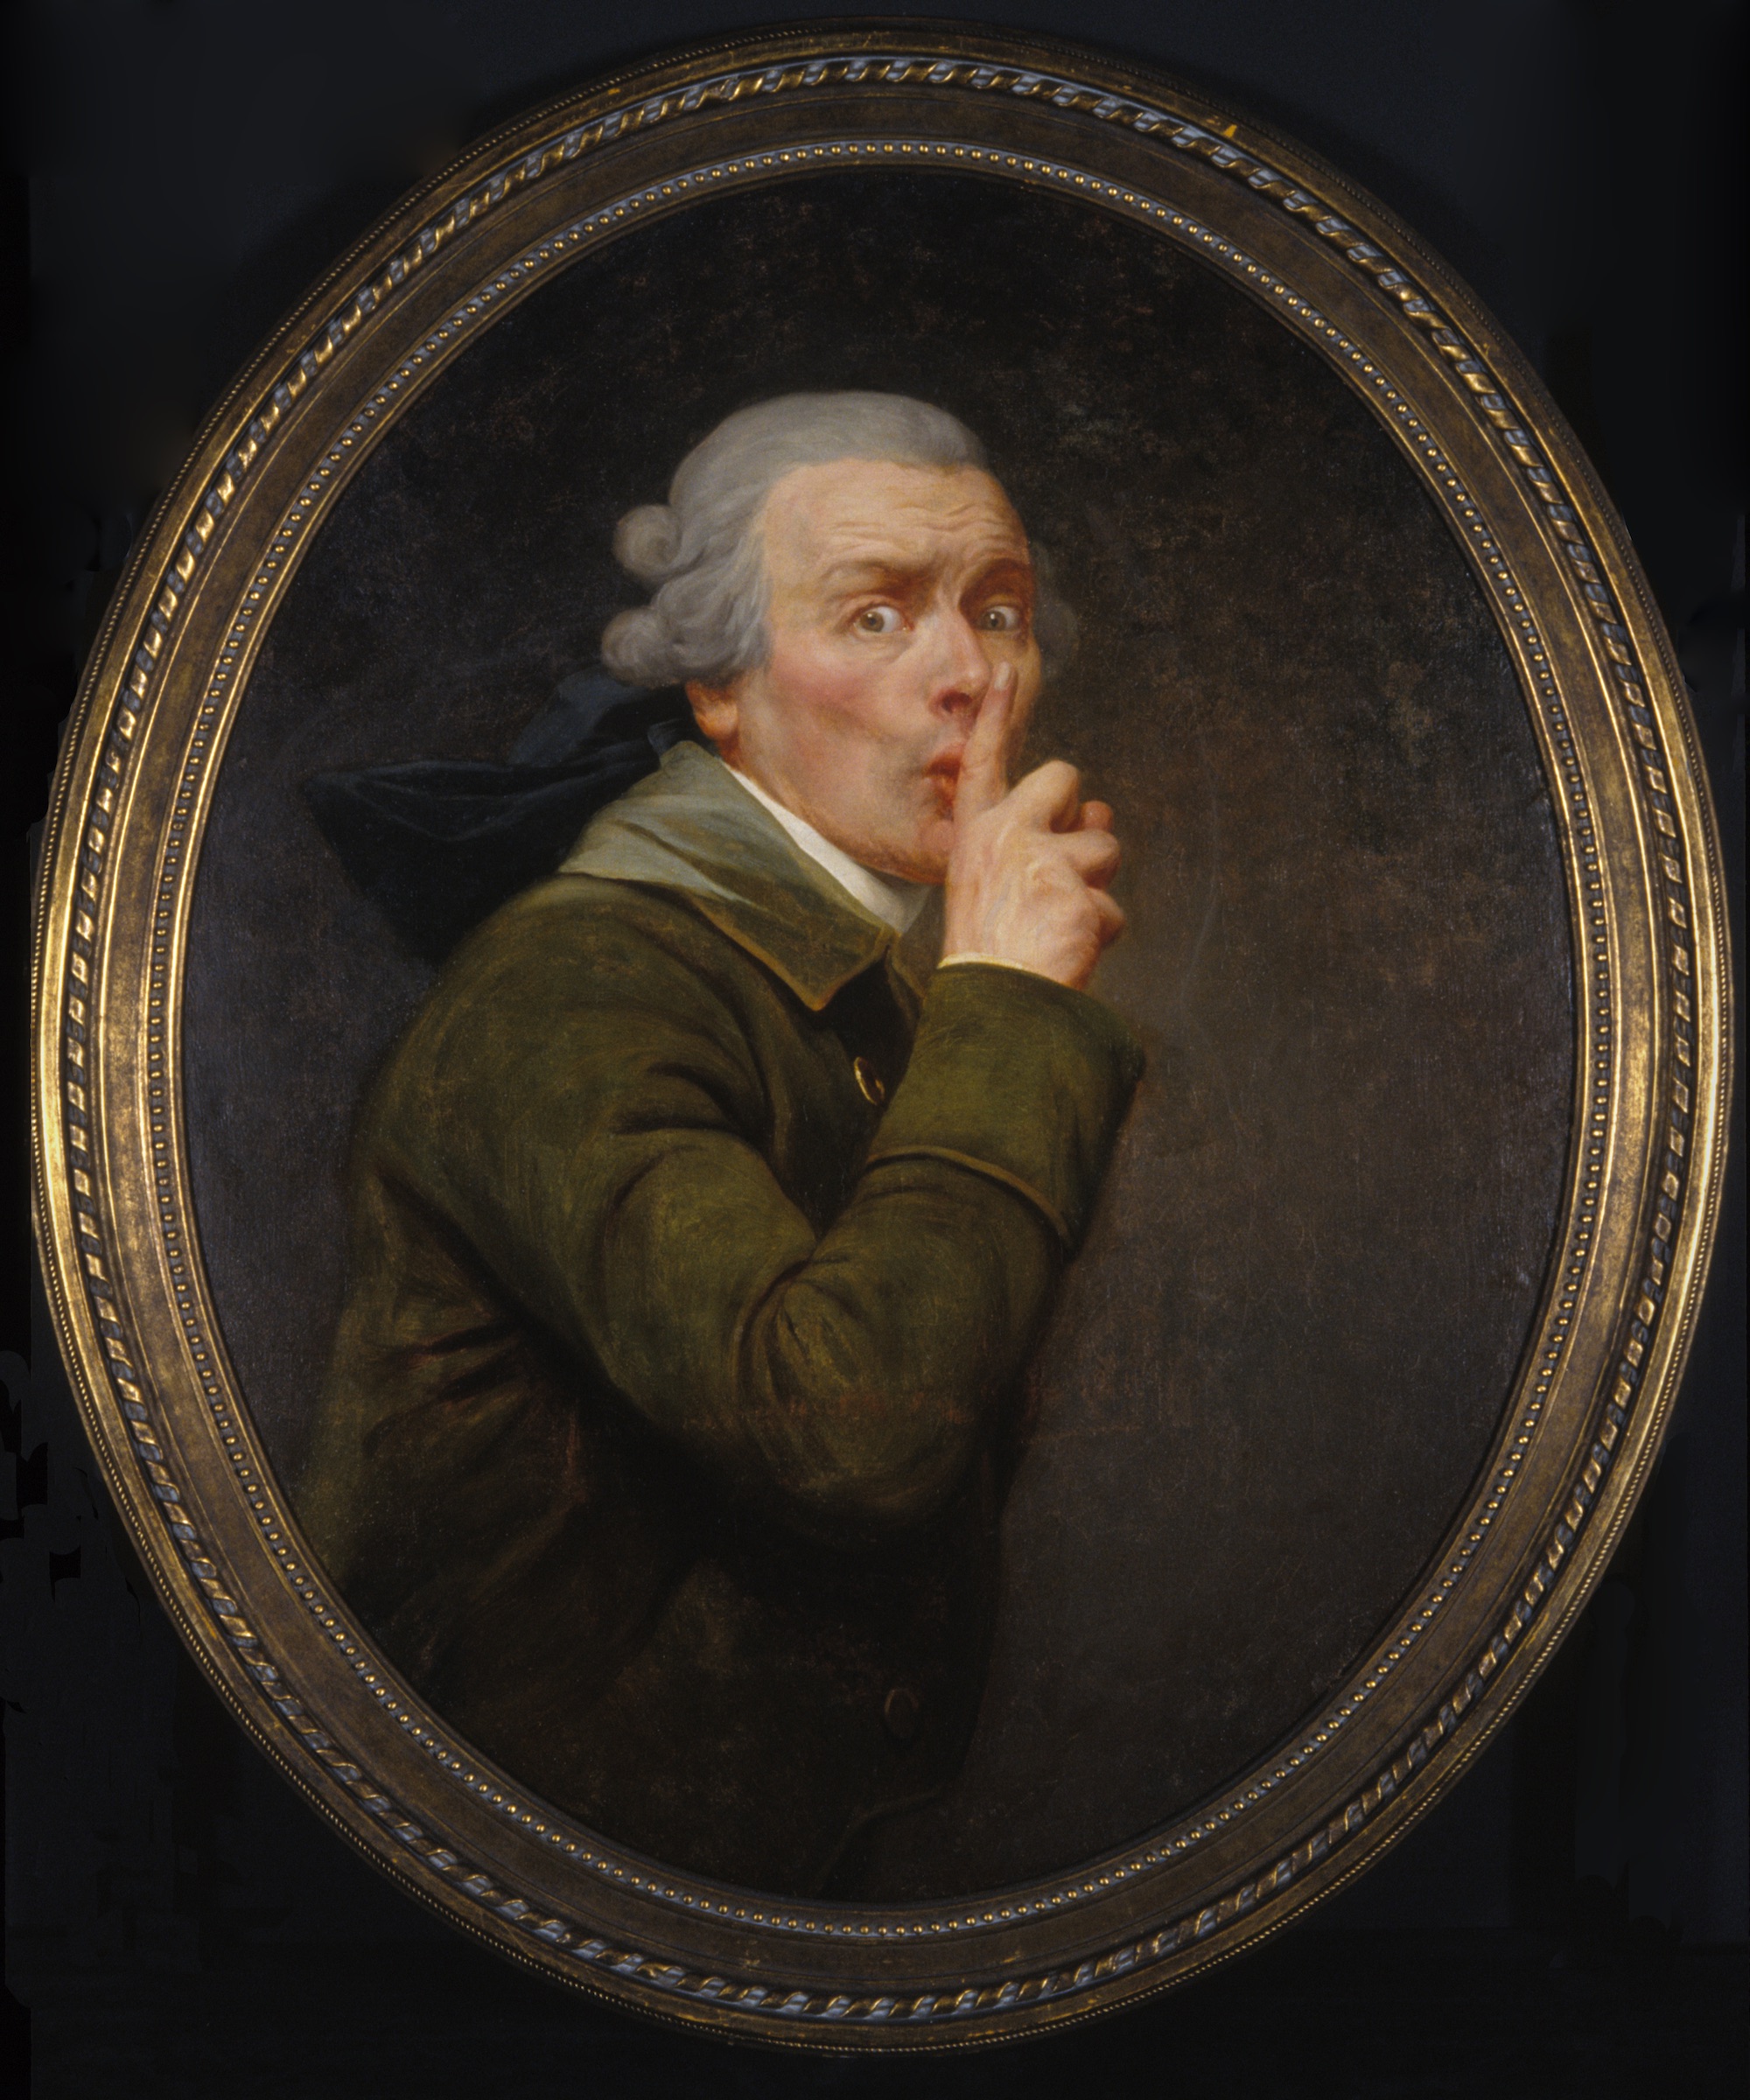 Le Discret by Joseph Ducreux - 1791 körül - 91.6 x 79.9 cm 